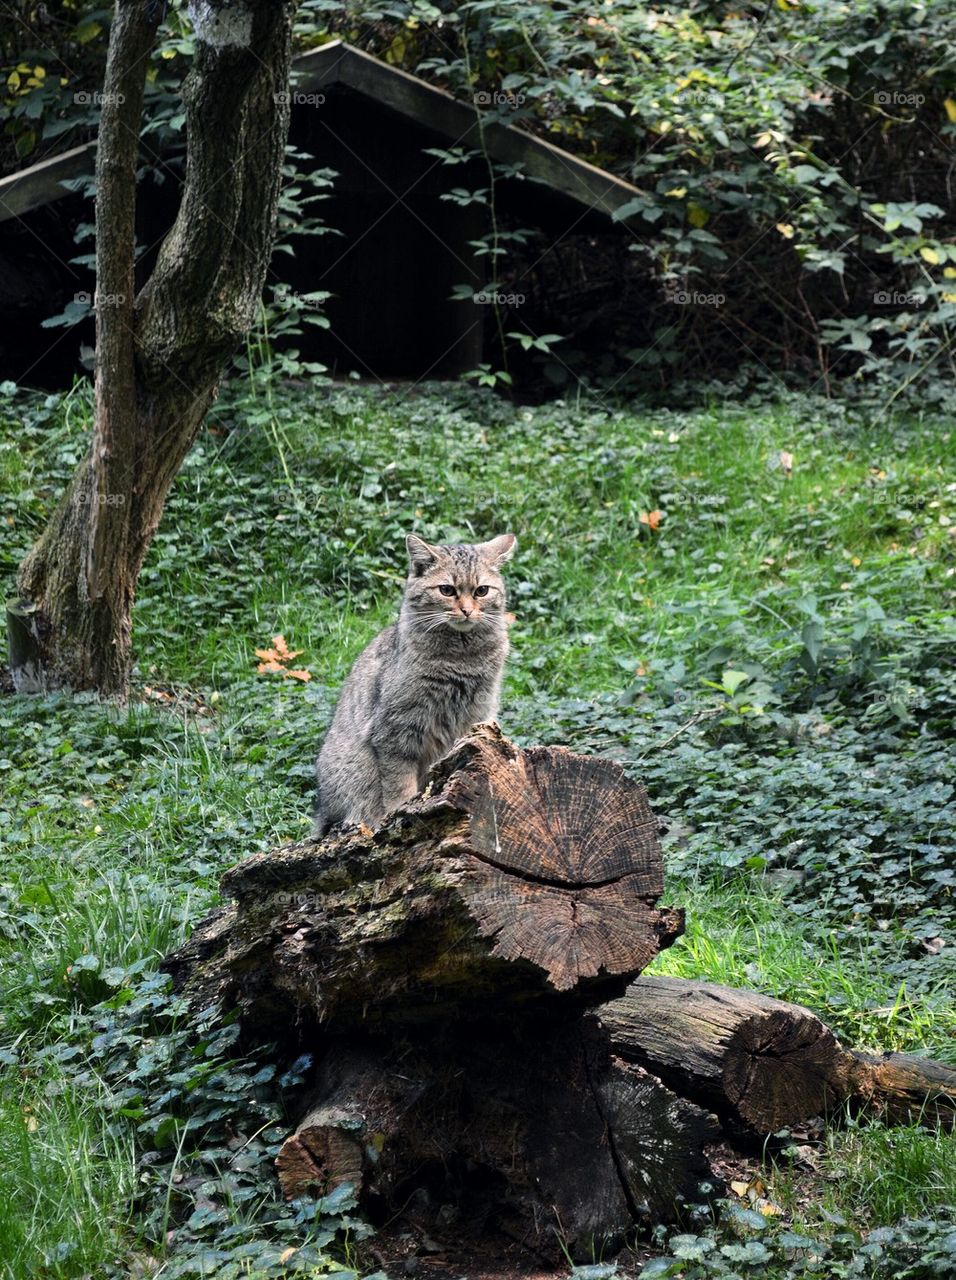 Wildcat in the wildlife park 